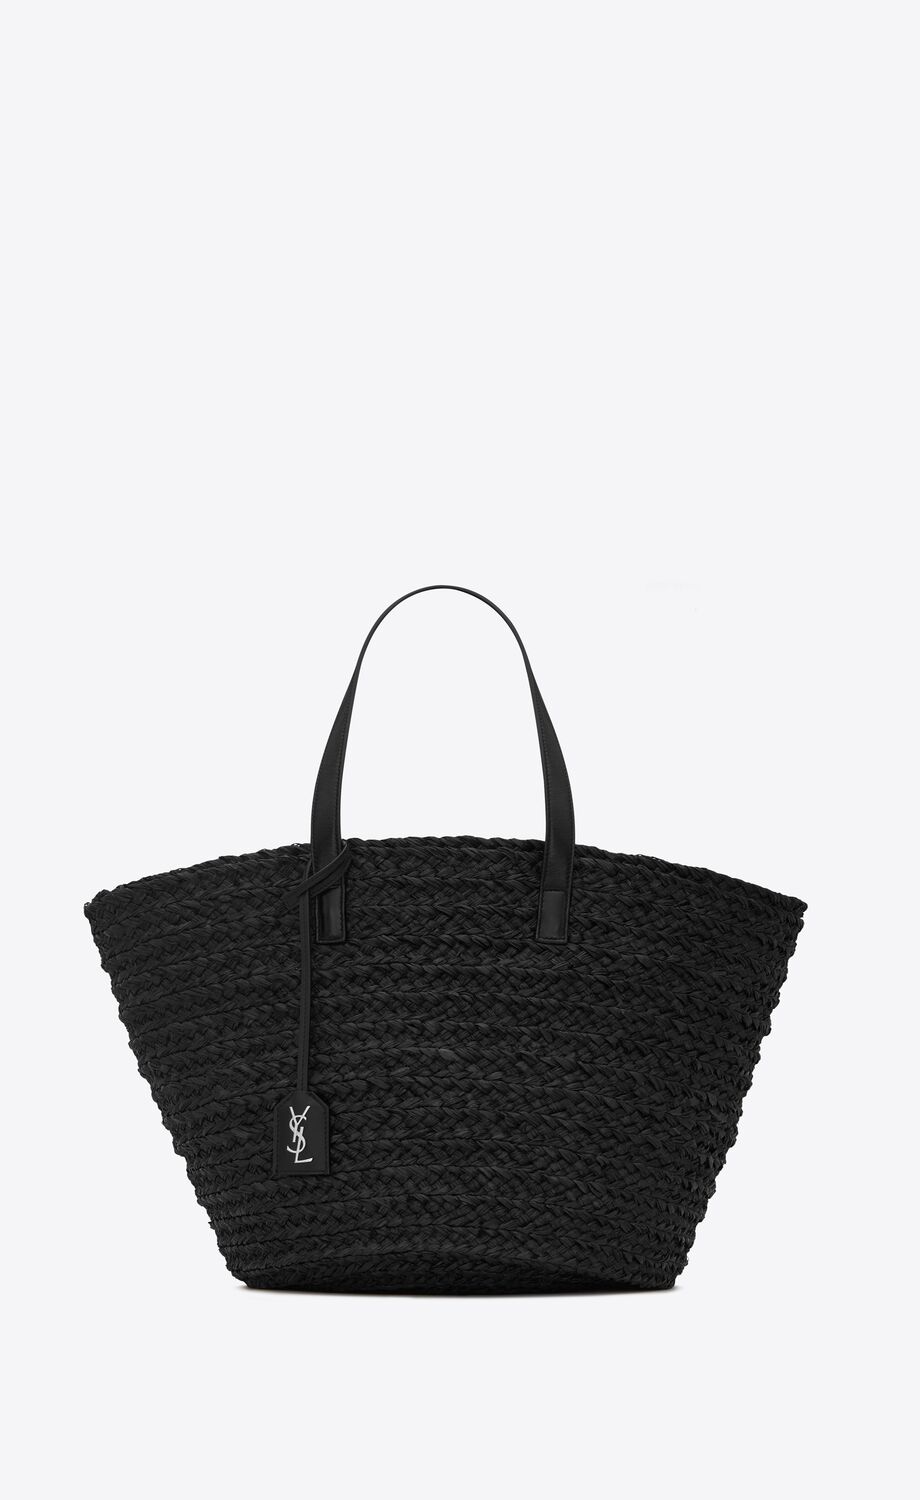 PANIER Medium bag in raffia | Saint Laurent | YSL.com